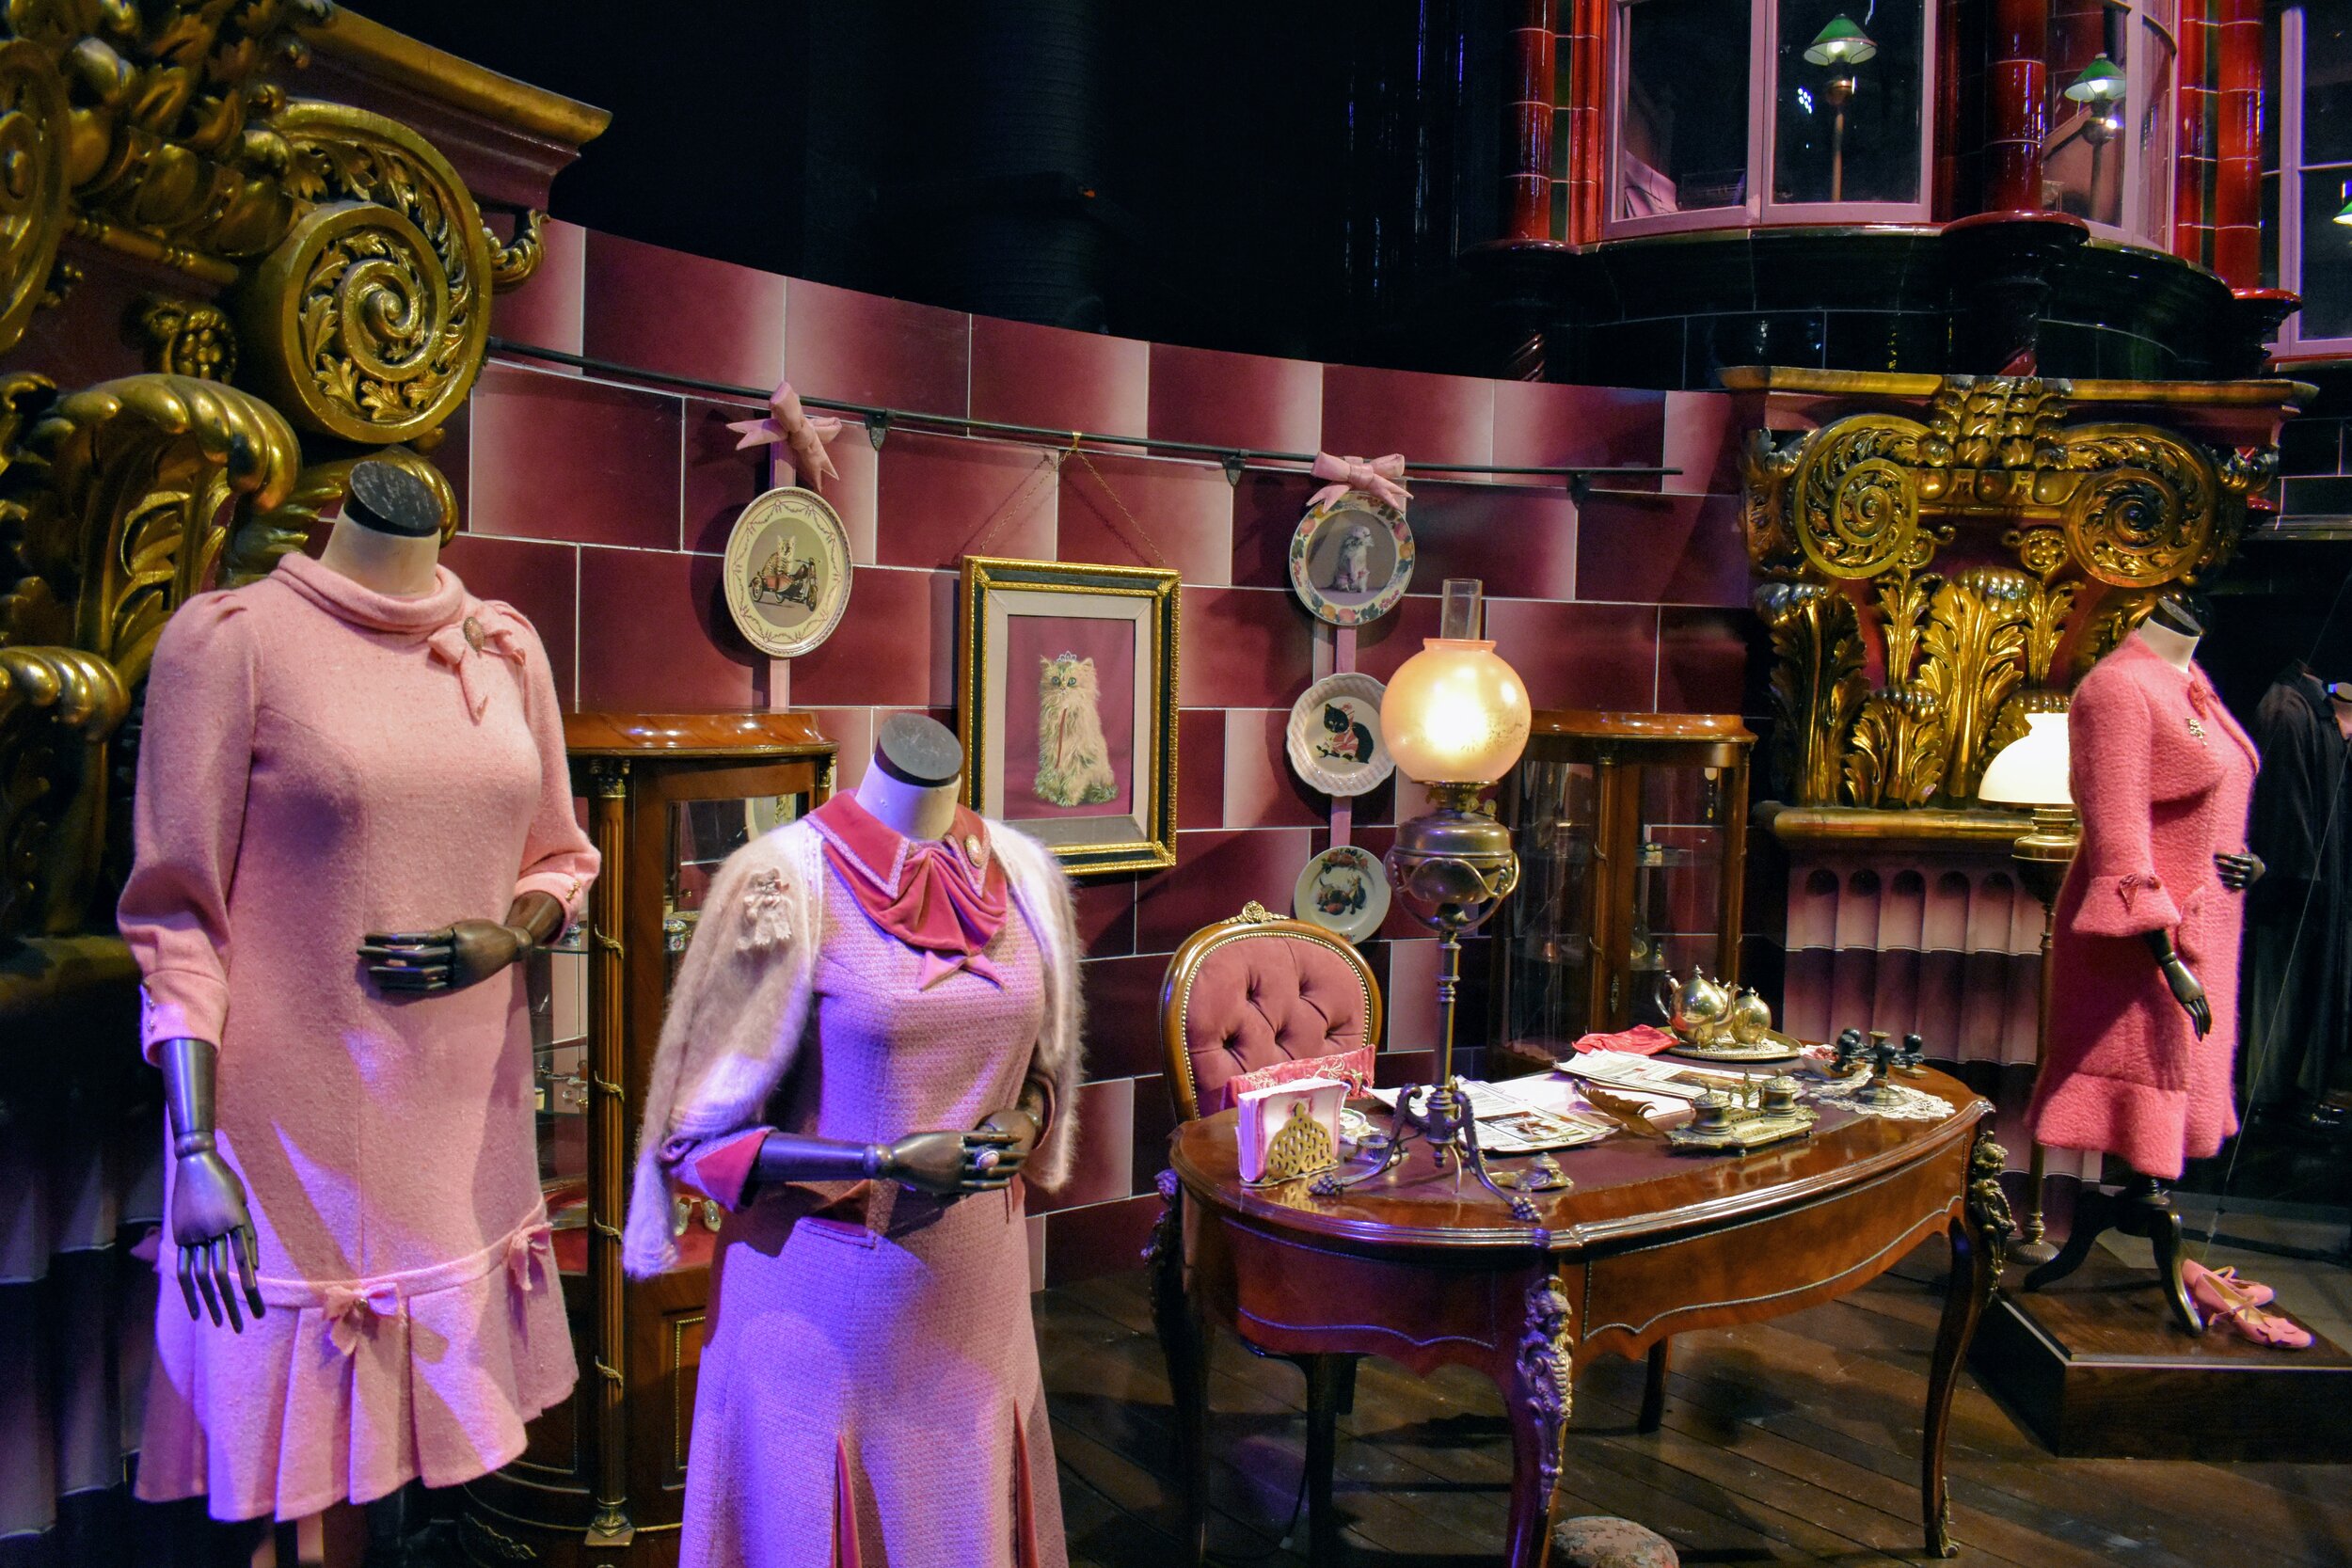 Professor Umbridge's Office &amp; Costumes